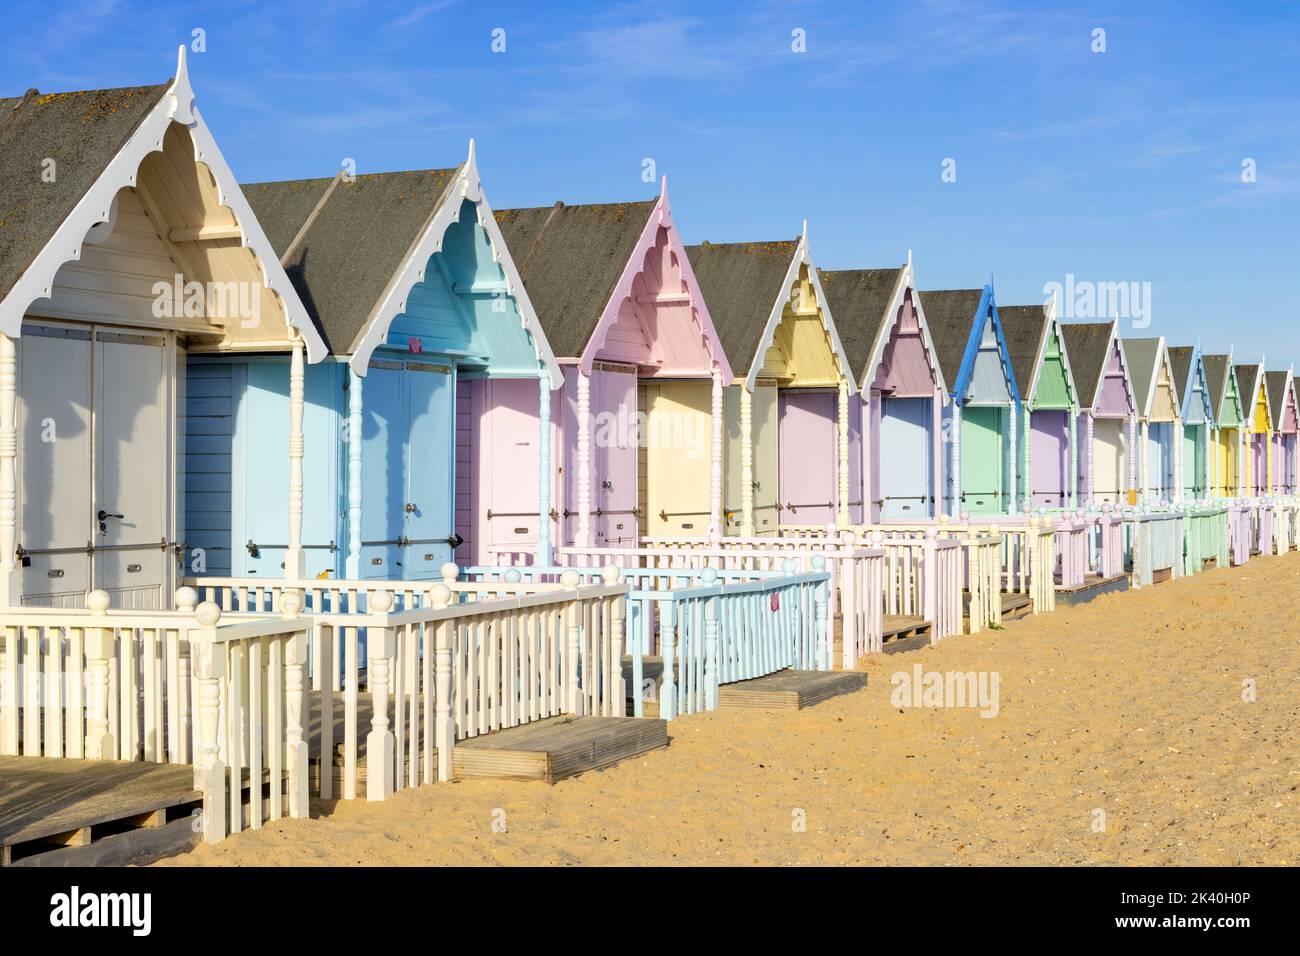 Mersea Island Beach huts rangée de huttes de plage colorées Mersea Island Beach West mersea Island Essex Angleterre GB Europe Banque D'Images